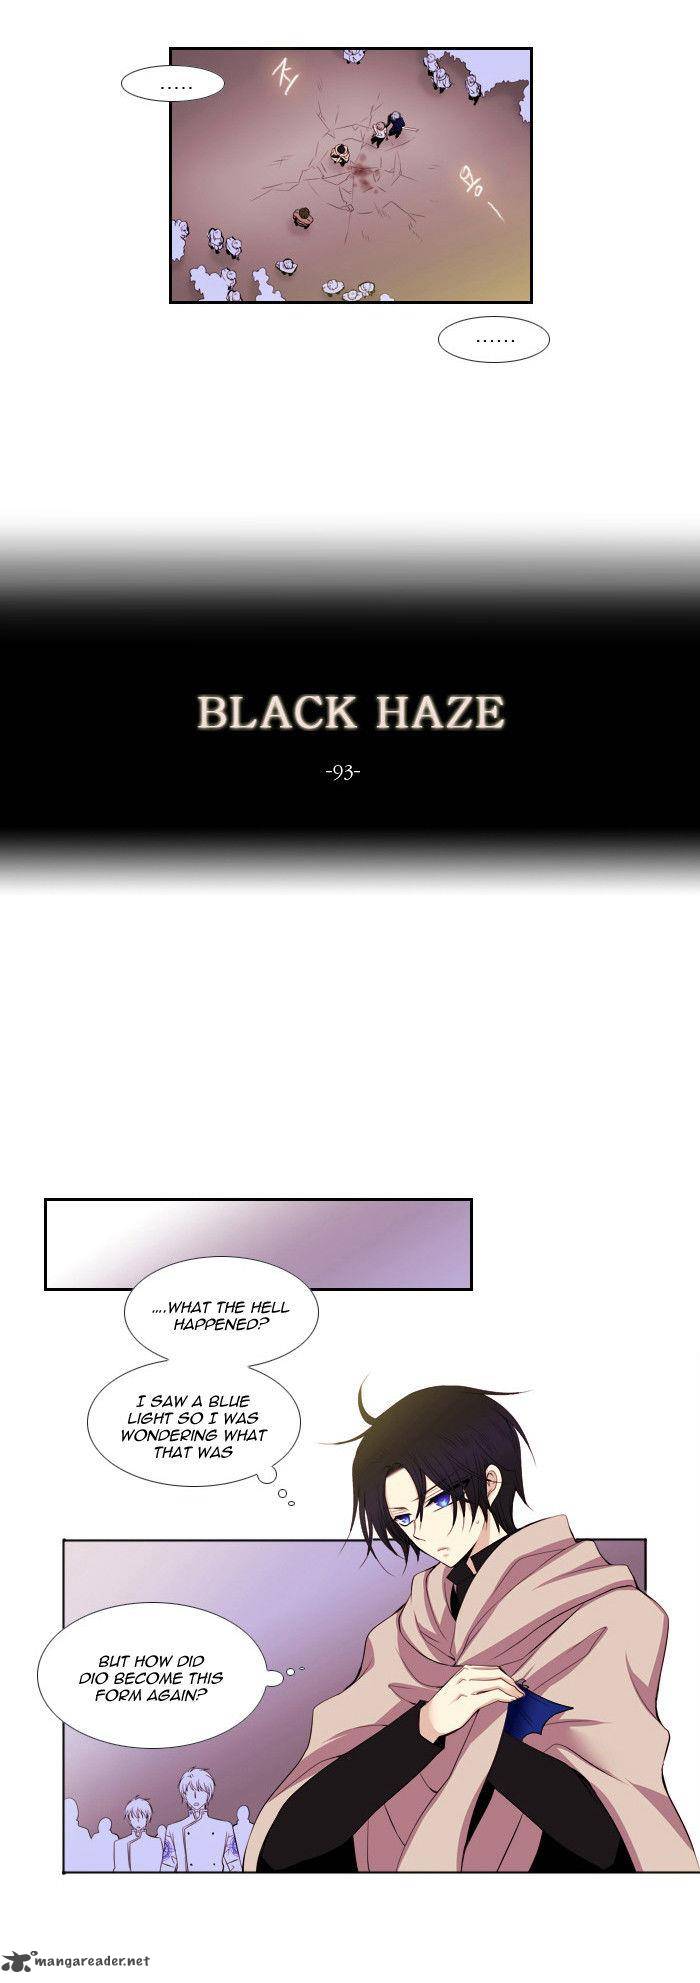 Black Haze 93 2